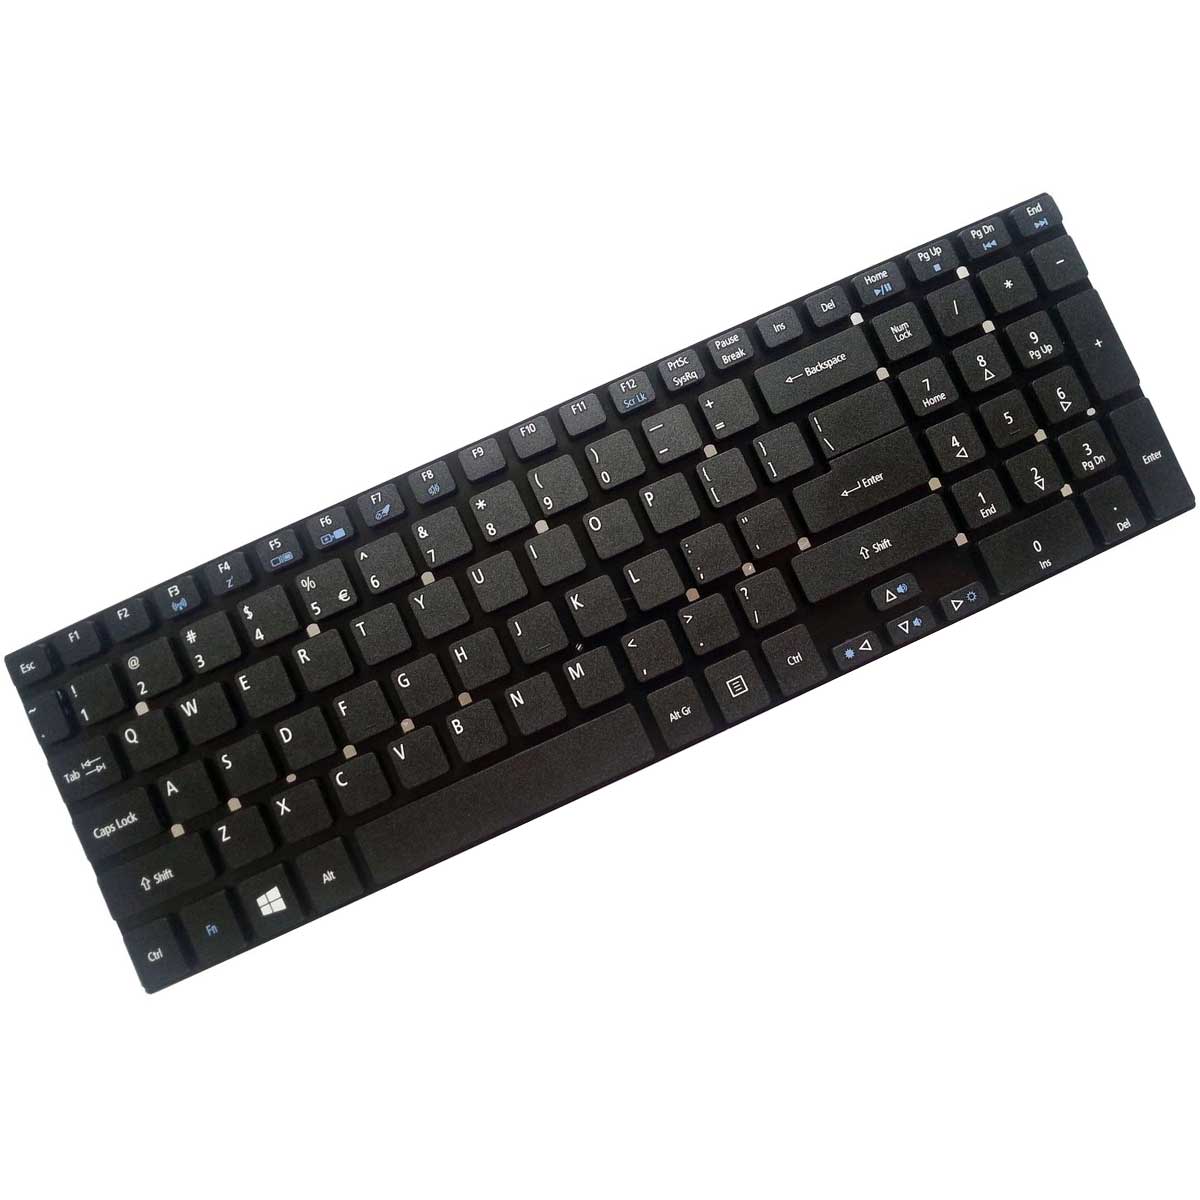 کیبورد لپ تاپ ایسر Keyboard Acer E1-570